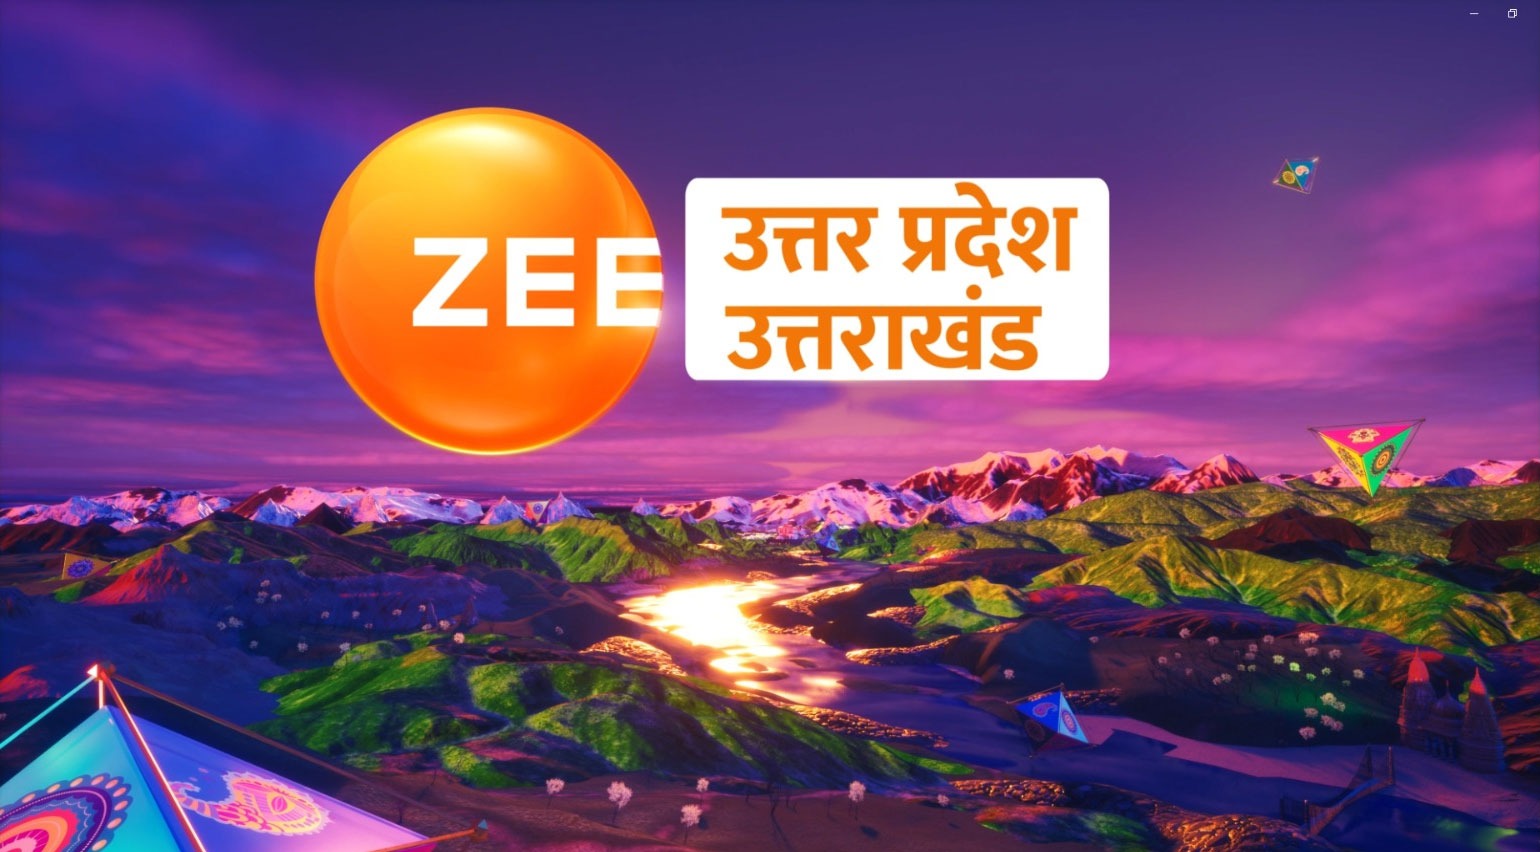 Zee Uttar Pradesh/Uttarakhand